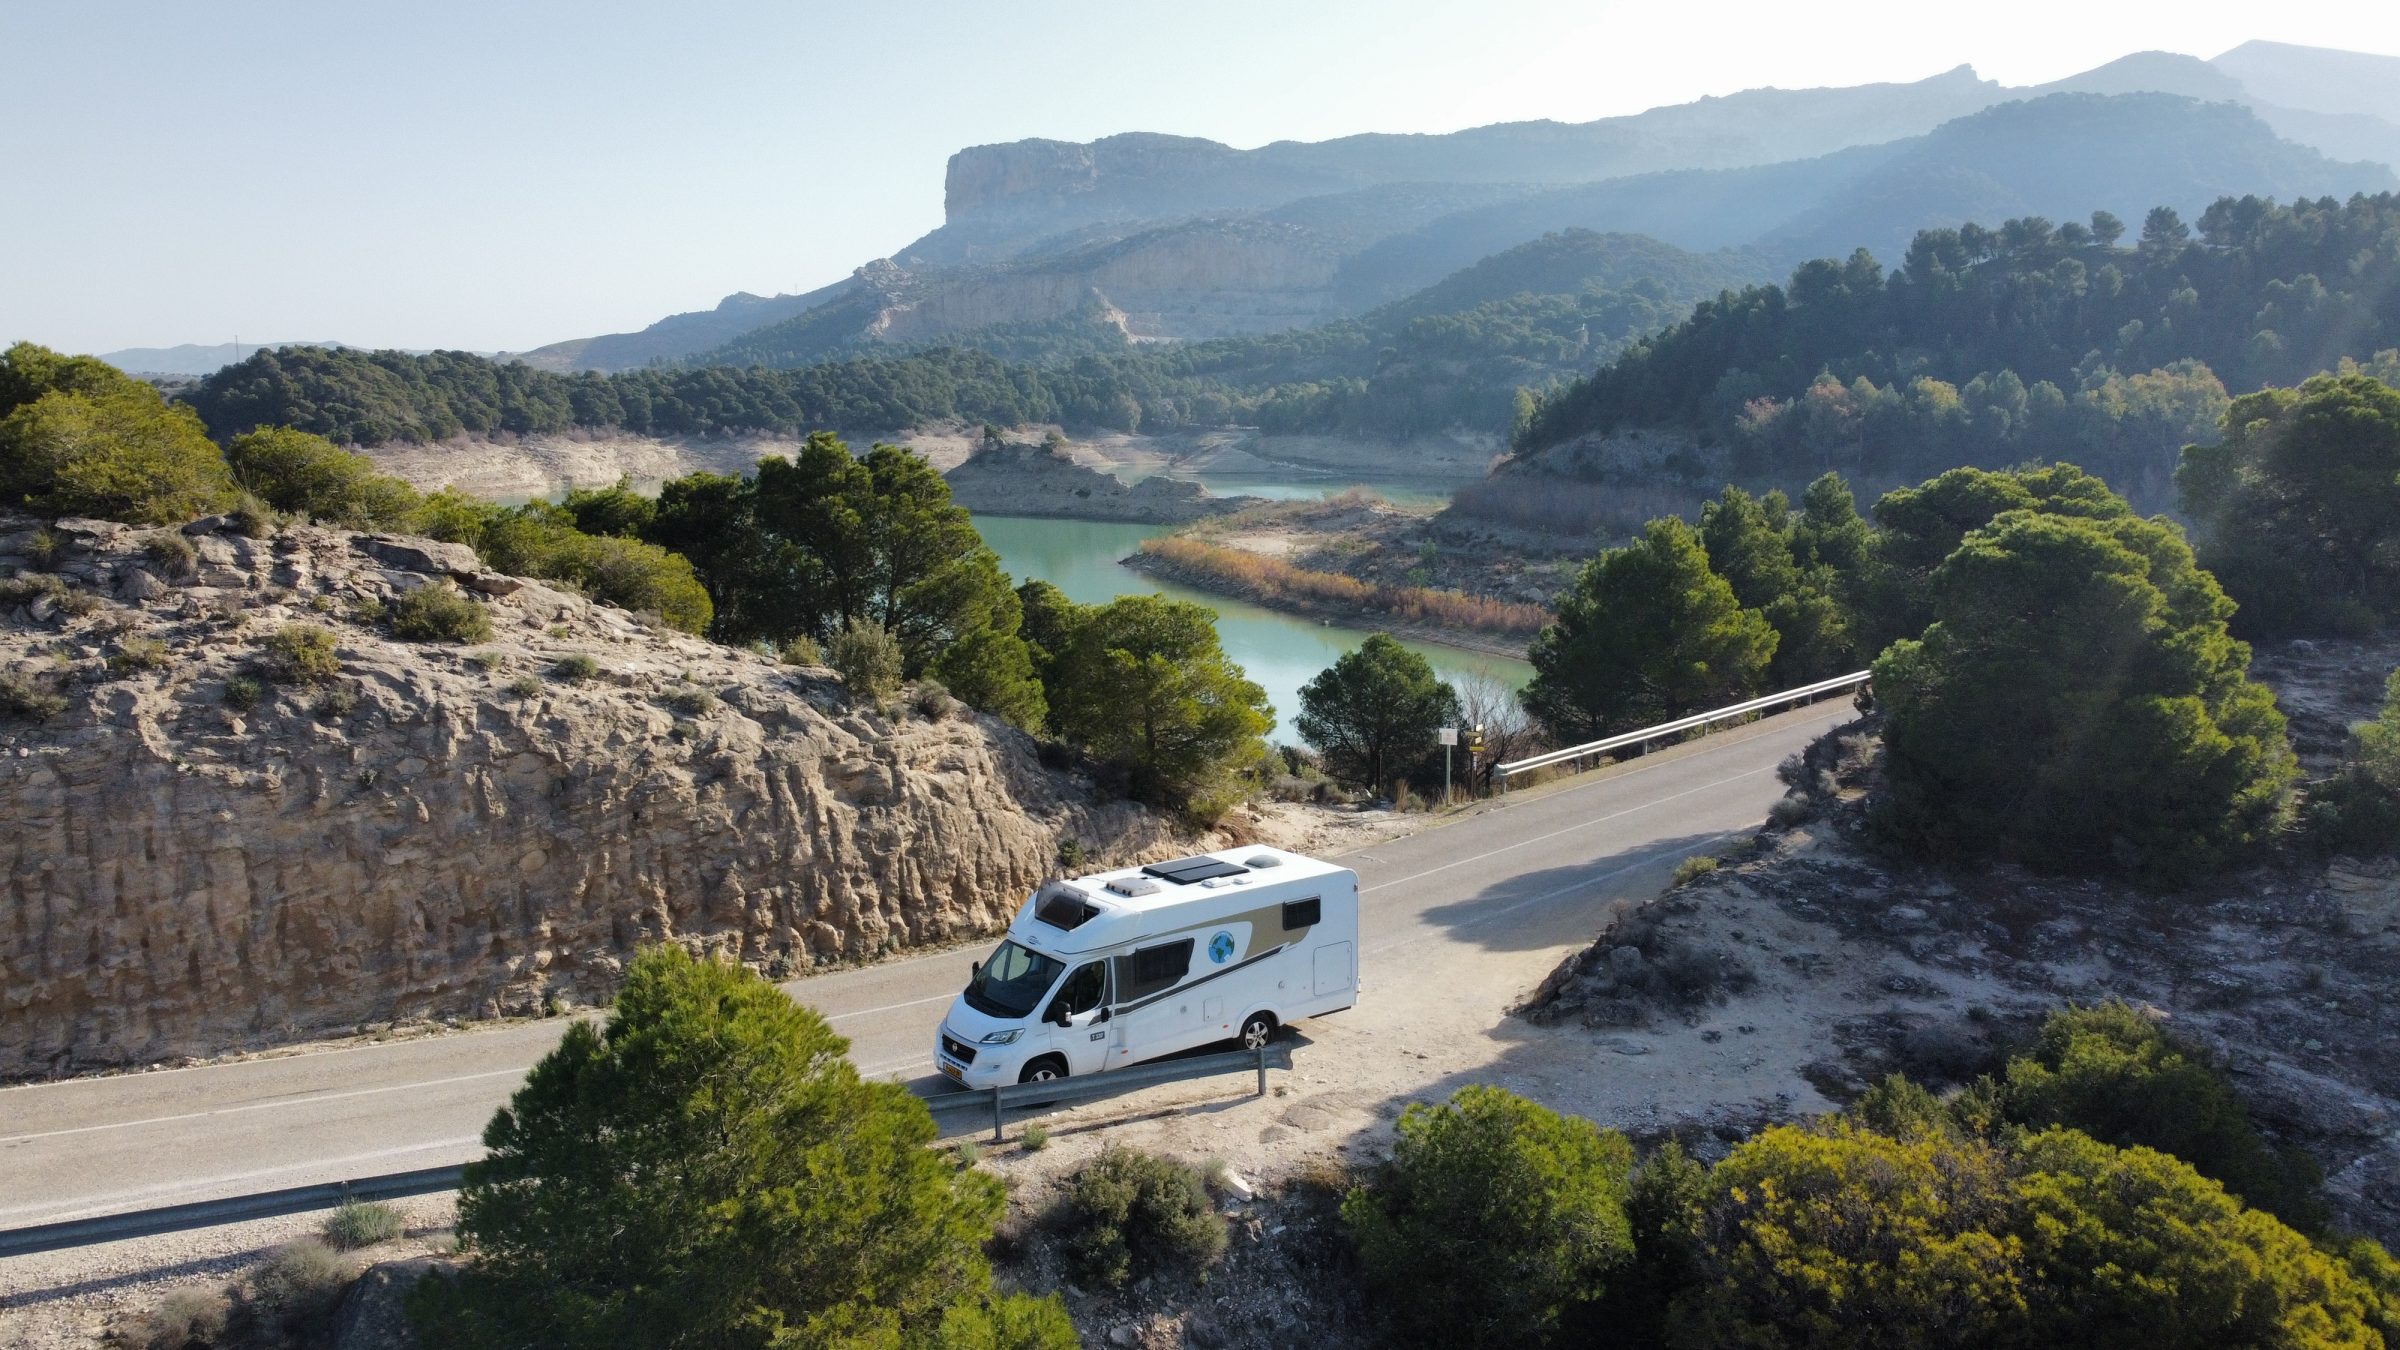 Le camping-car dans un beau paysage | Conseils et lieux d'intérêt pour les camping-cars dans le sud de l'Espagne